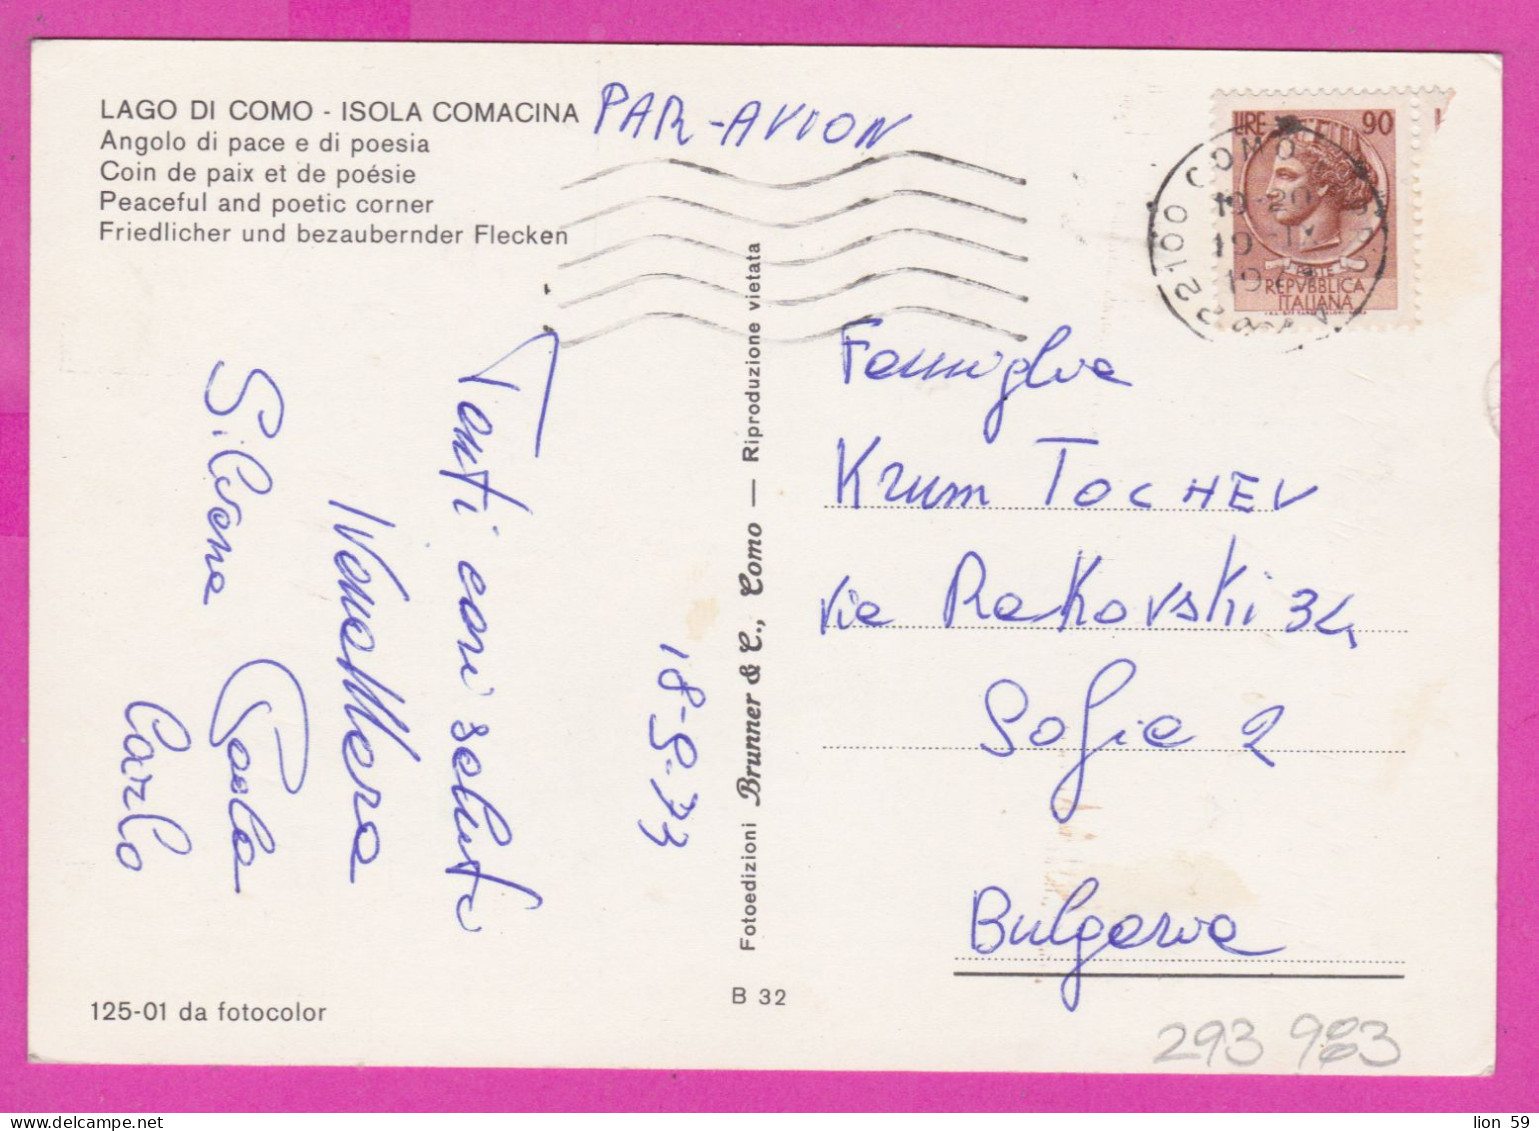 293983 / Italy - LAGO DI COMO - Isola Comacina , Angolo Di Pace E Di Poesia PC 1973 USED 90 L Coin Of Syracuse - 1971-80: Storia Postale